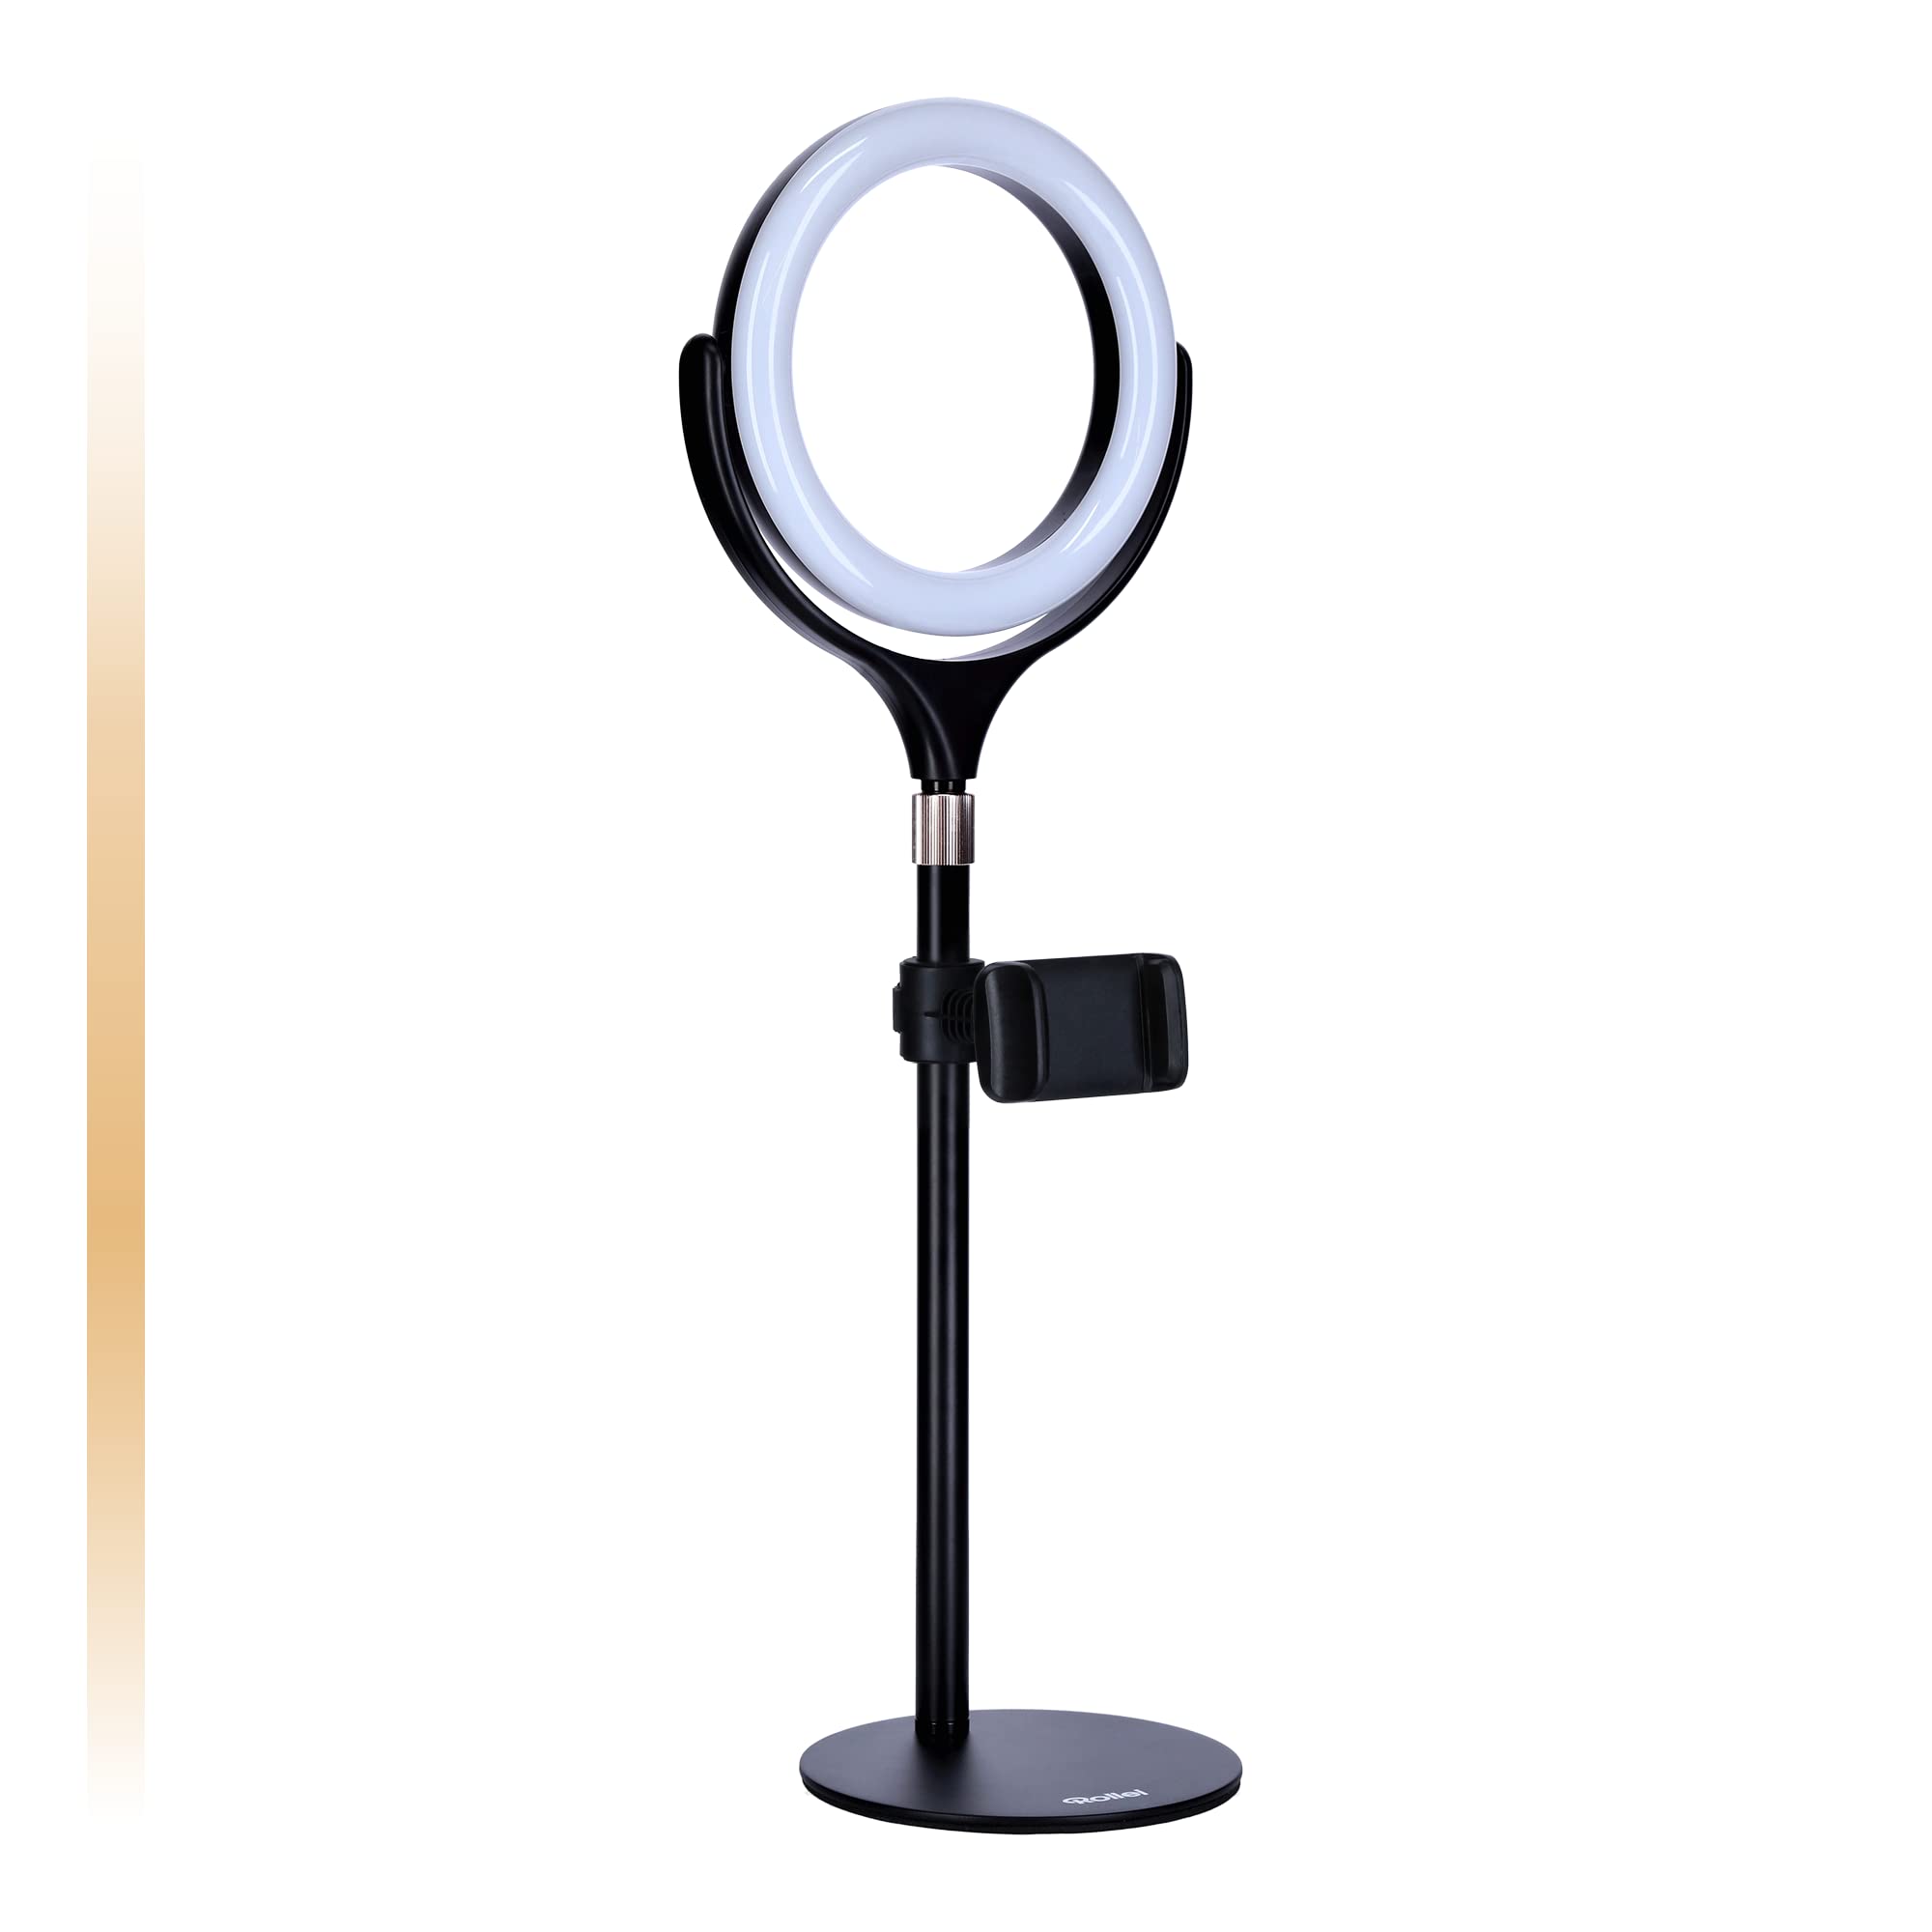 Rollei Lumis Tabletop Ring Light Bi-Color, Ring-Licht mit Smartphone-Halterung, Smartphone Fernbedienung und Lampenstativ.120 LEDs (33x Warmweiß und 33 x Kaltweiß), 28586, schwarz